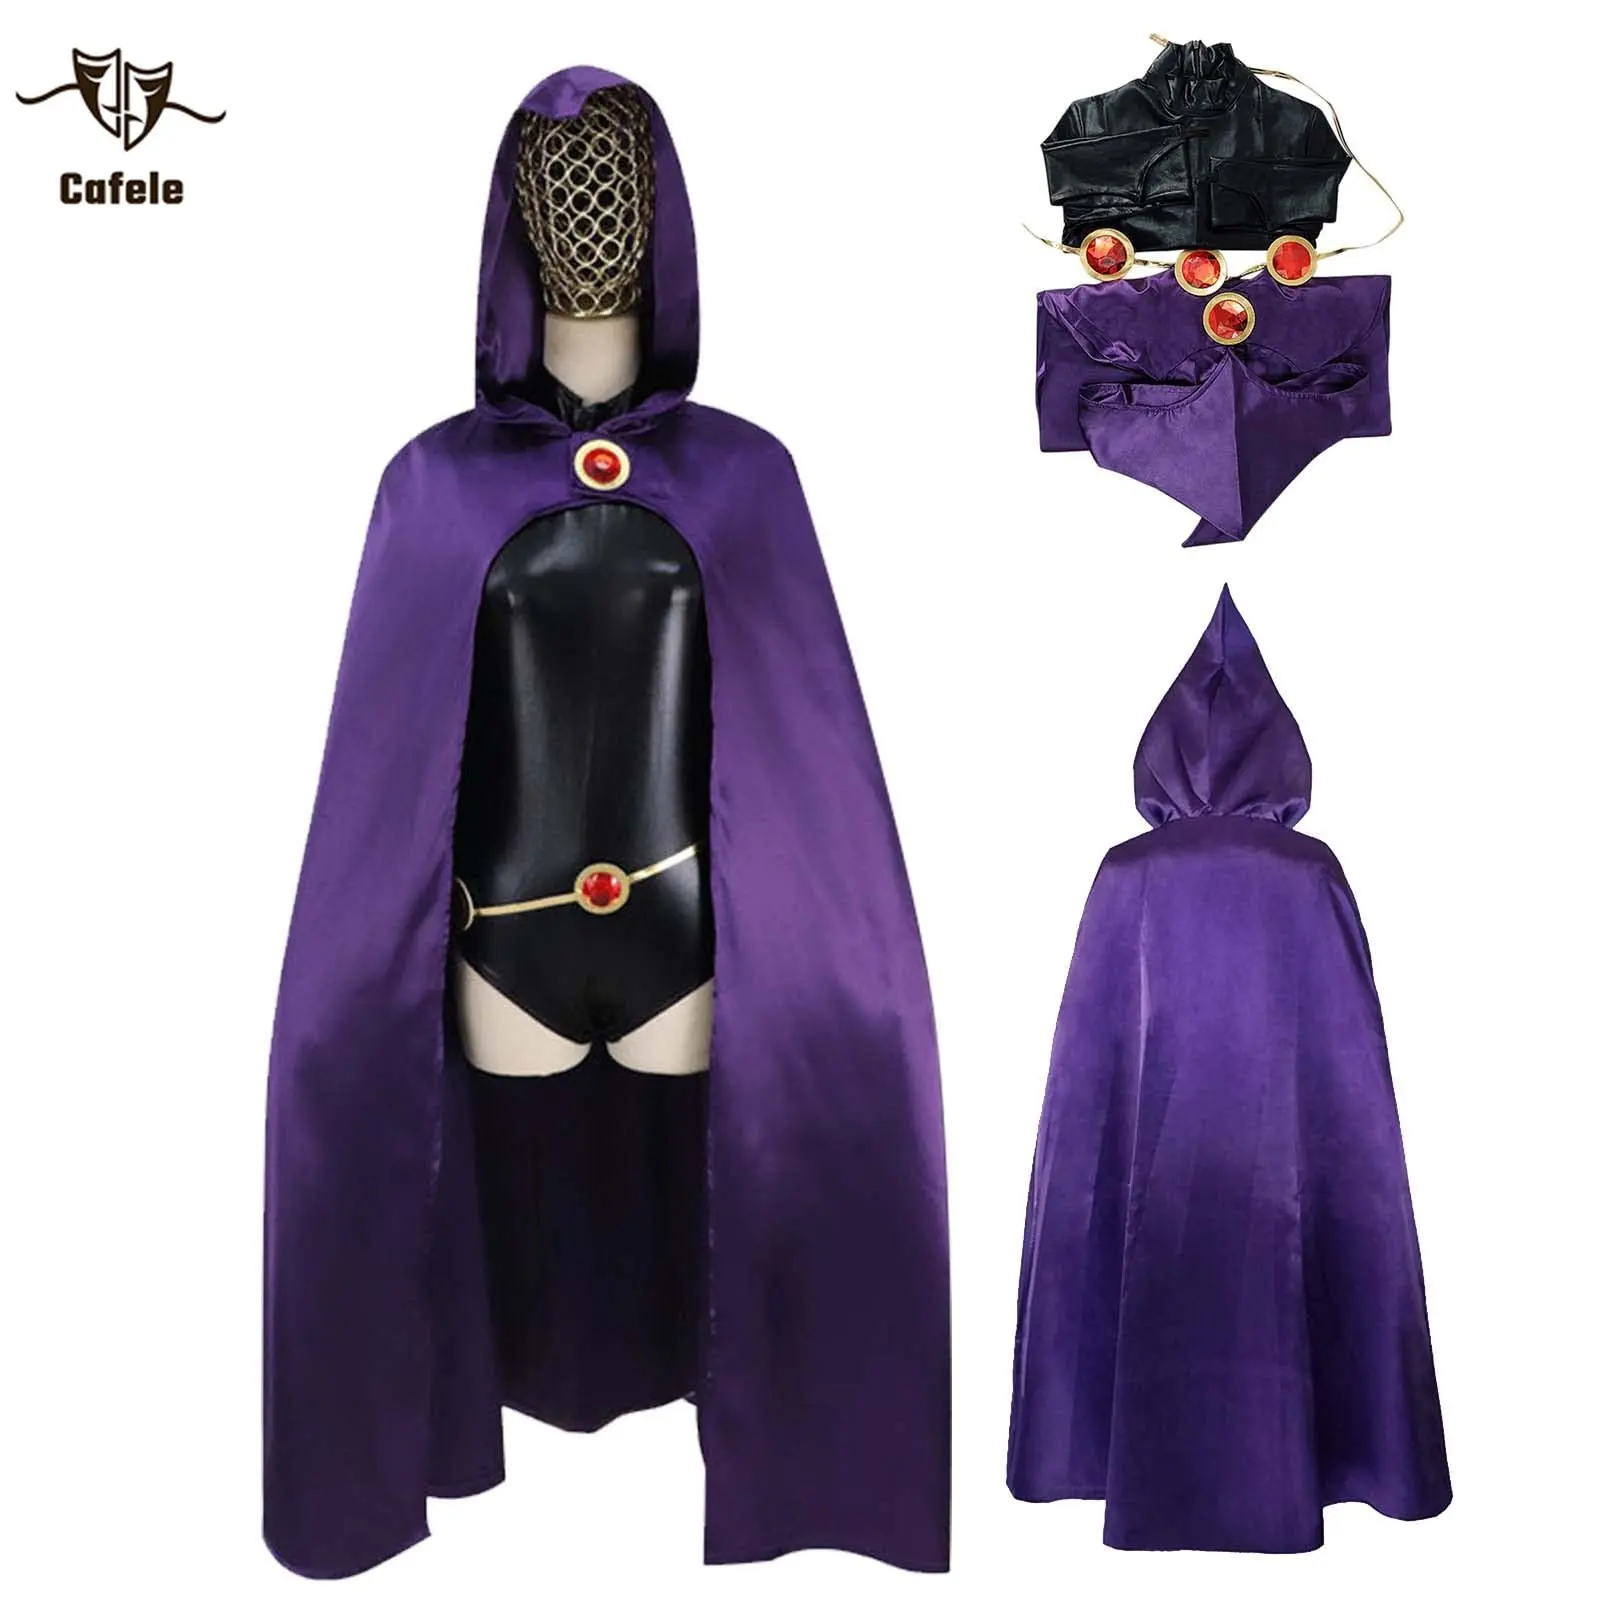 Cafele TeenTitans-Raven Cosplay Costume Deluxe Jumpsuit Belt With Purple Cloak Halloween Uniform Cosplay Costume Props For Women